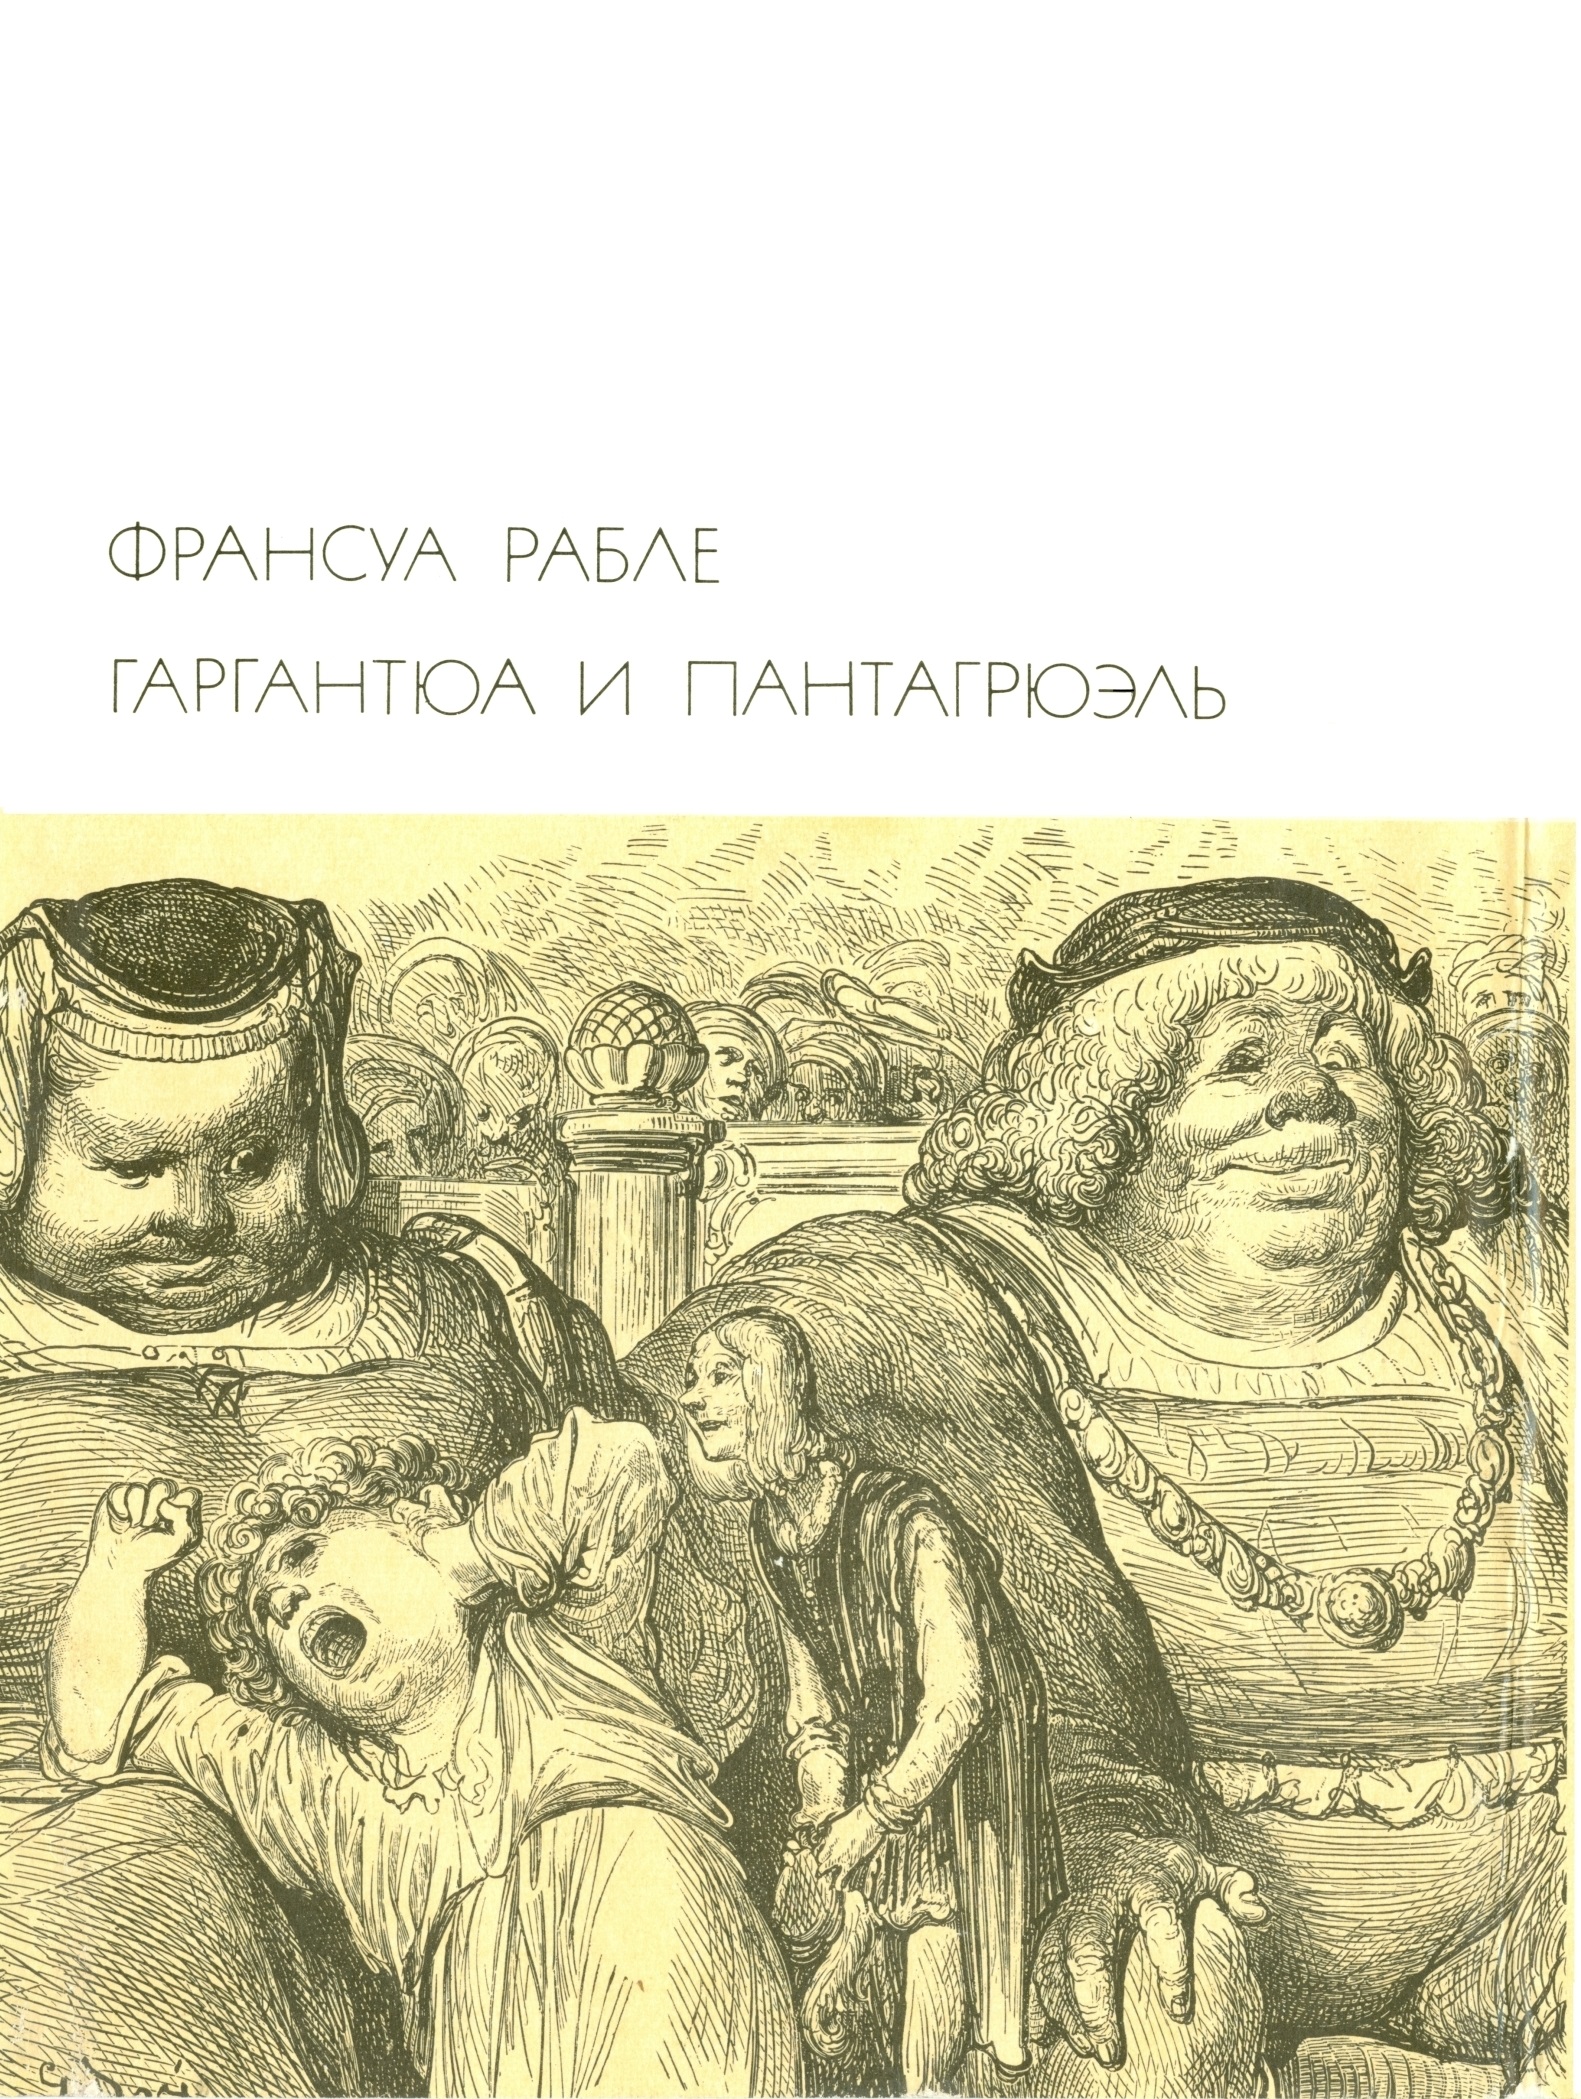 Изложение: Гаргантюа и Пантагрюэль (Gargantua et Pantagruel)